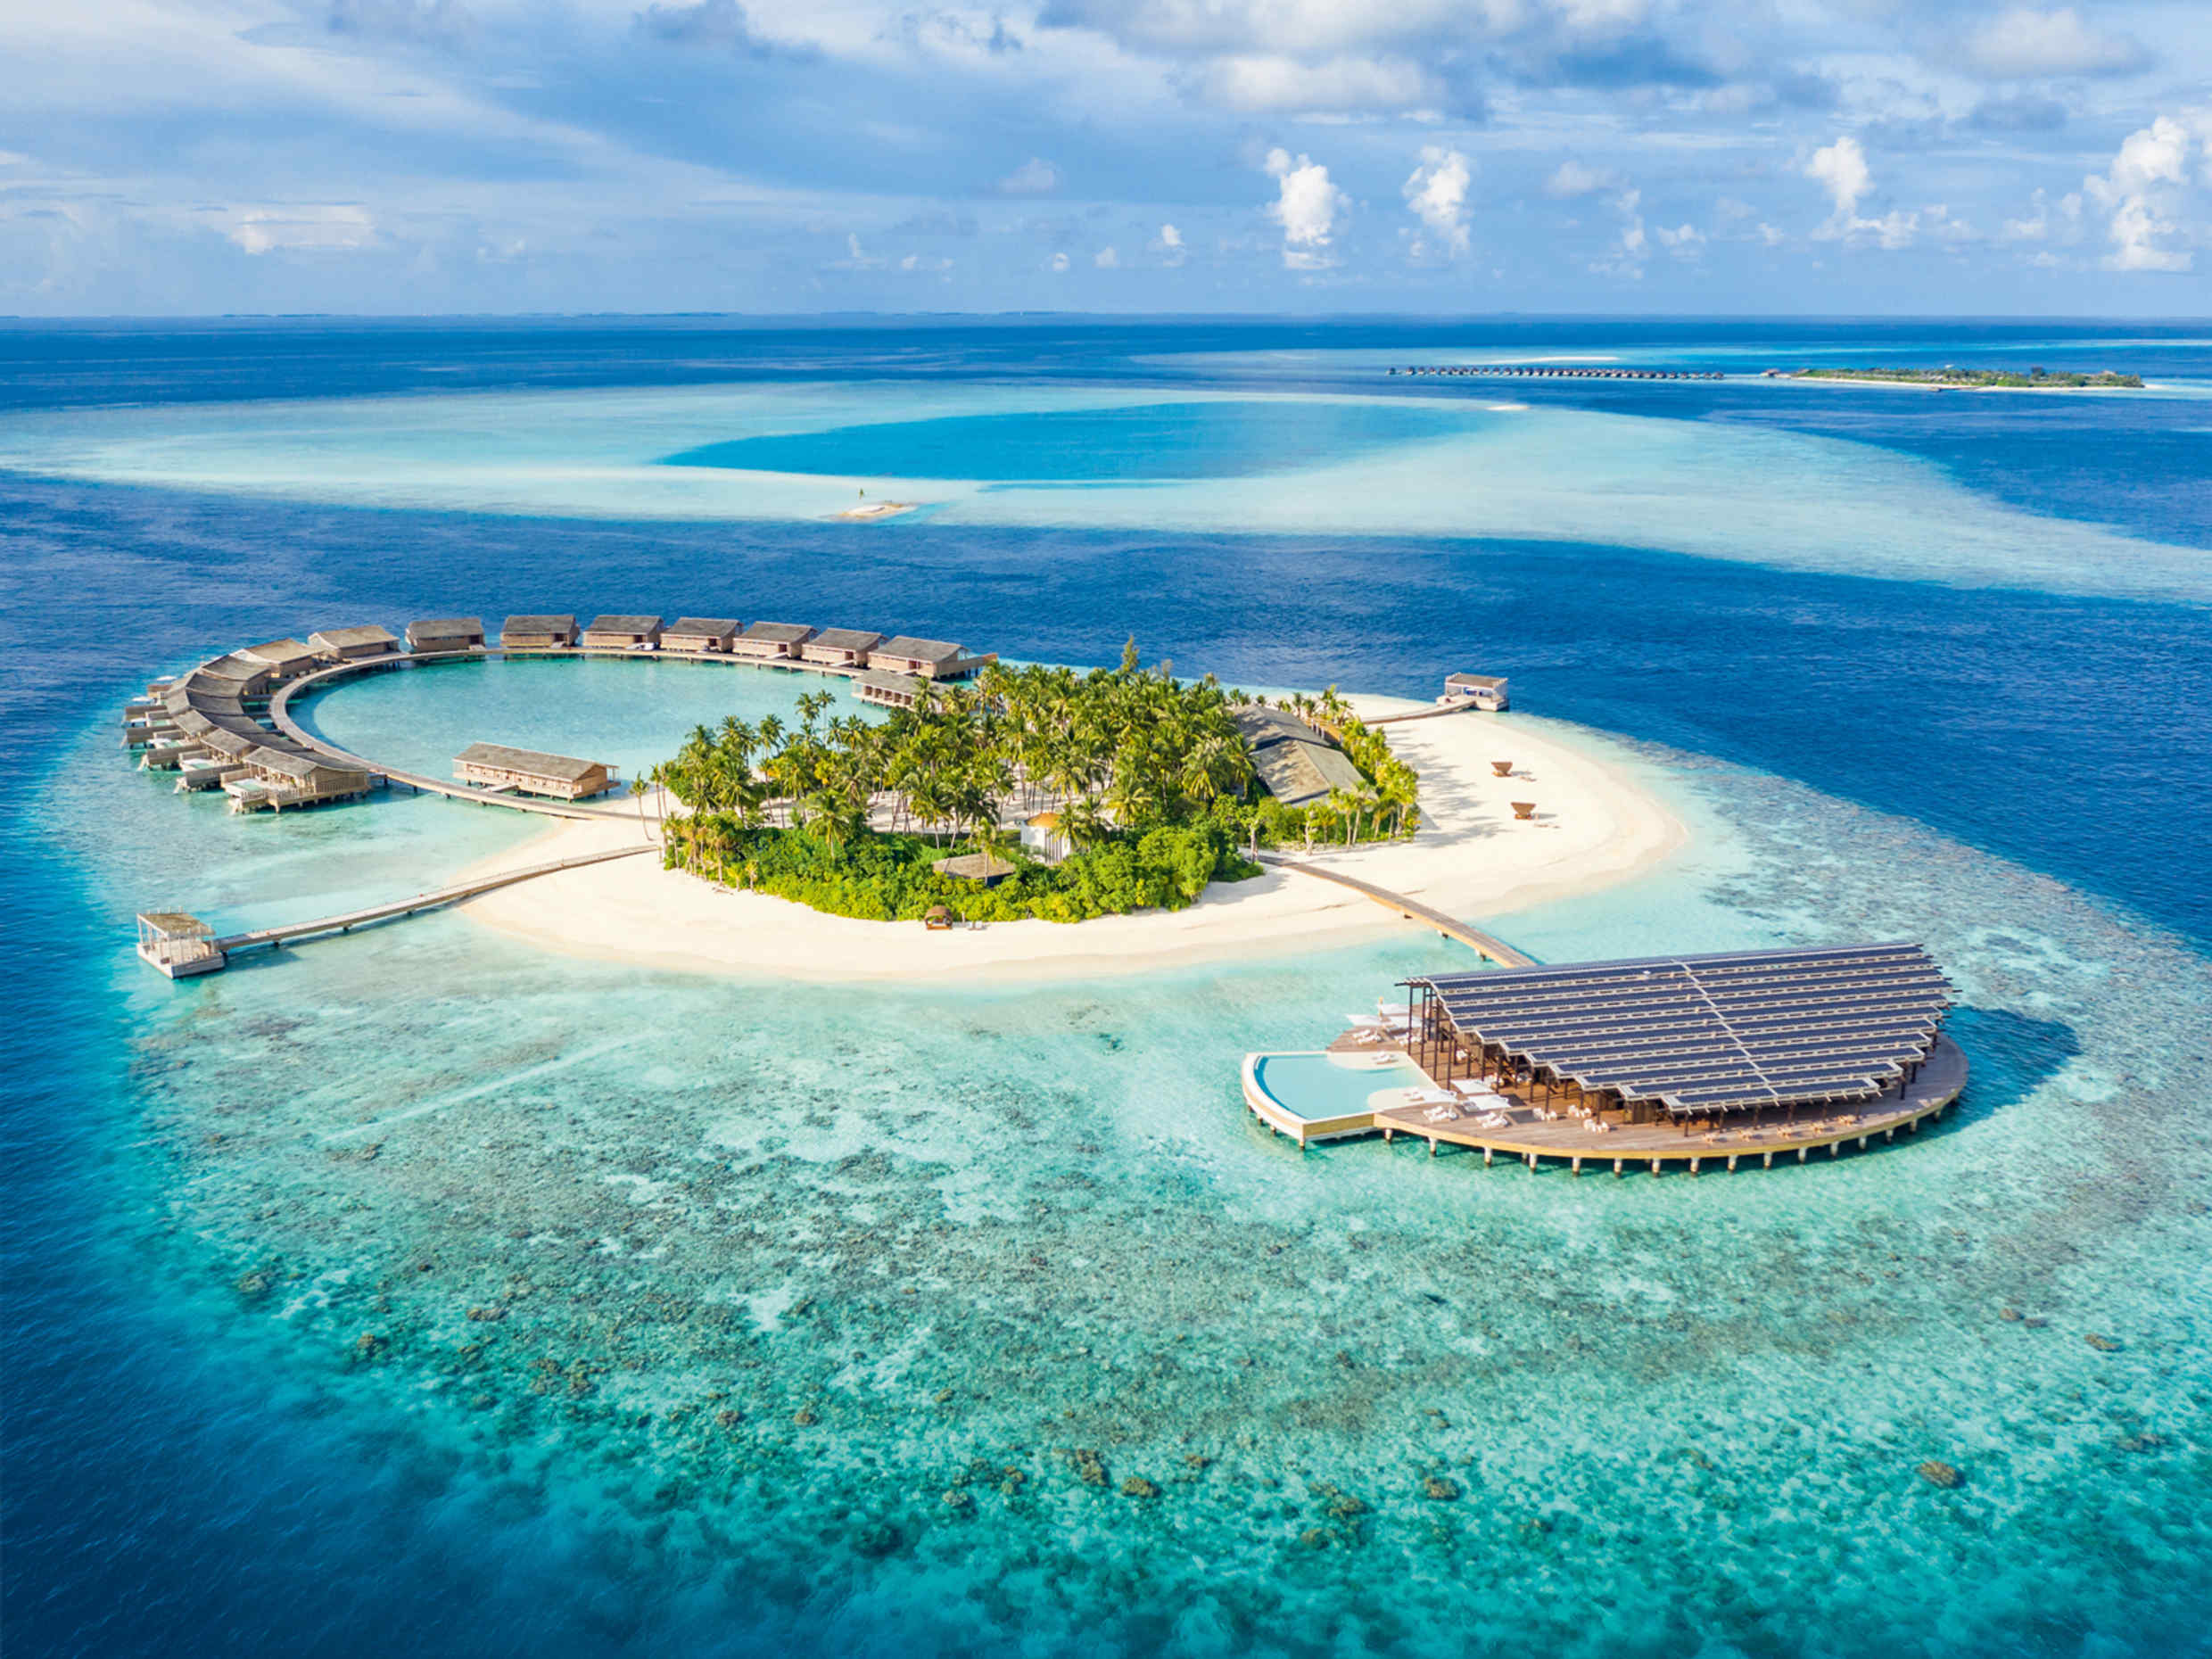 Мальдивы – популярное туристическое место дикой природы Южной Азии